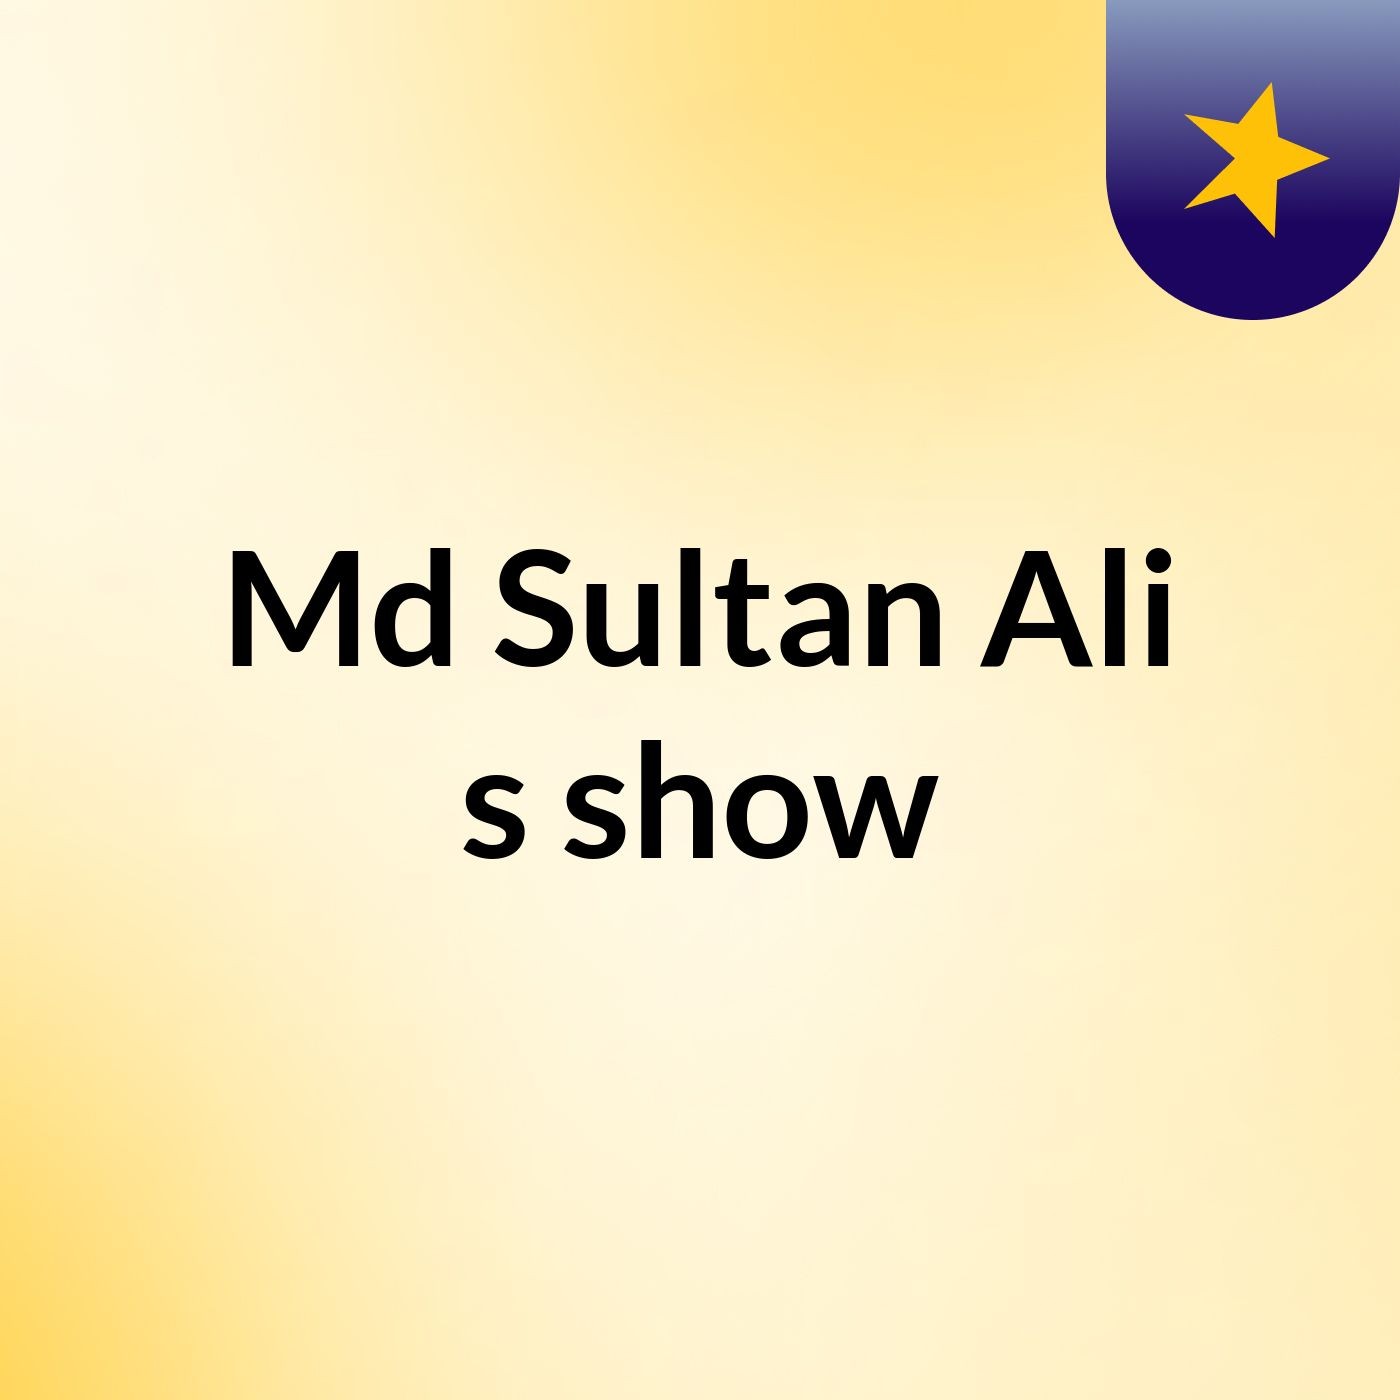 Md Sultan Ali's show